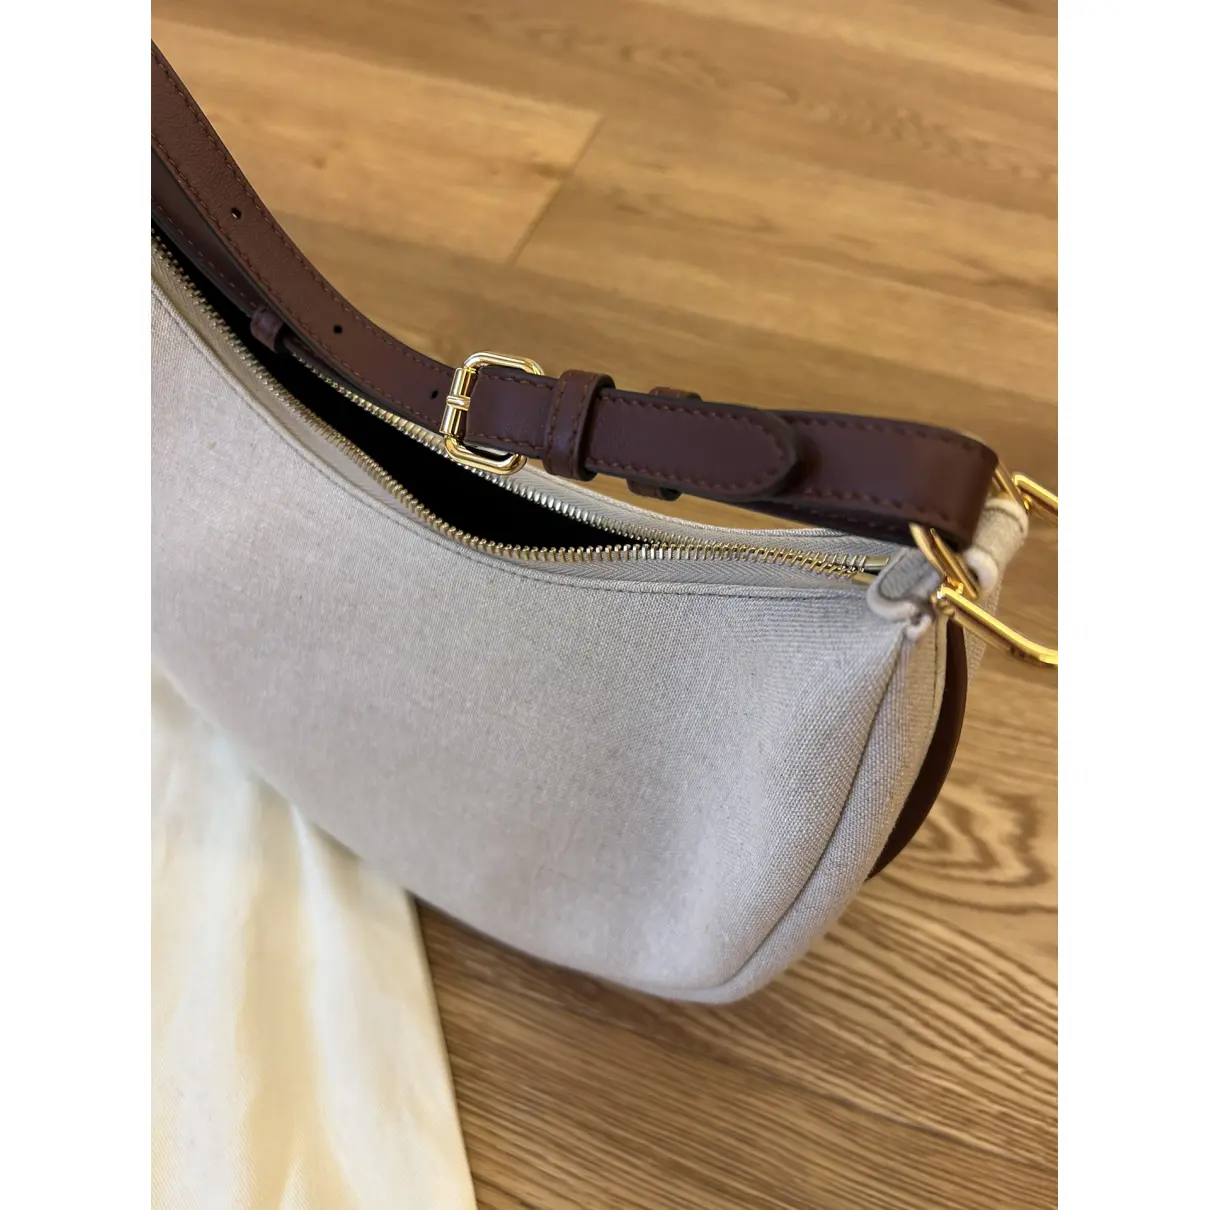 Fendigraphy cloth handbag Fendi